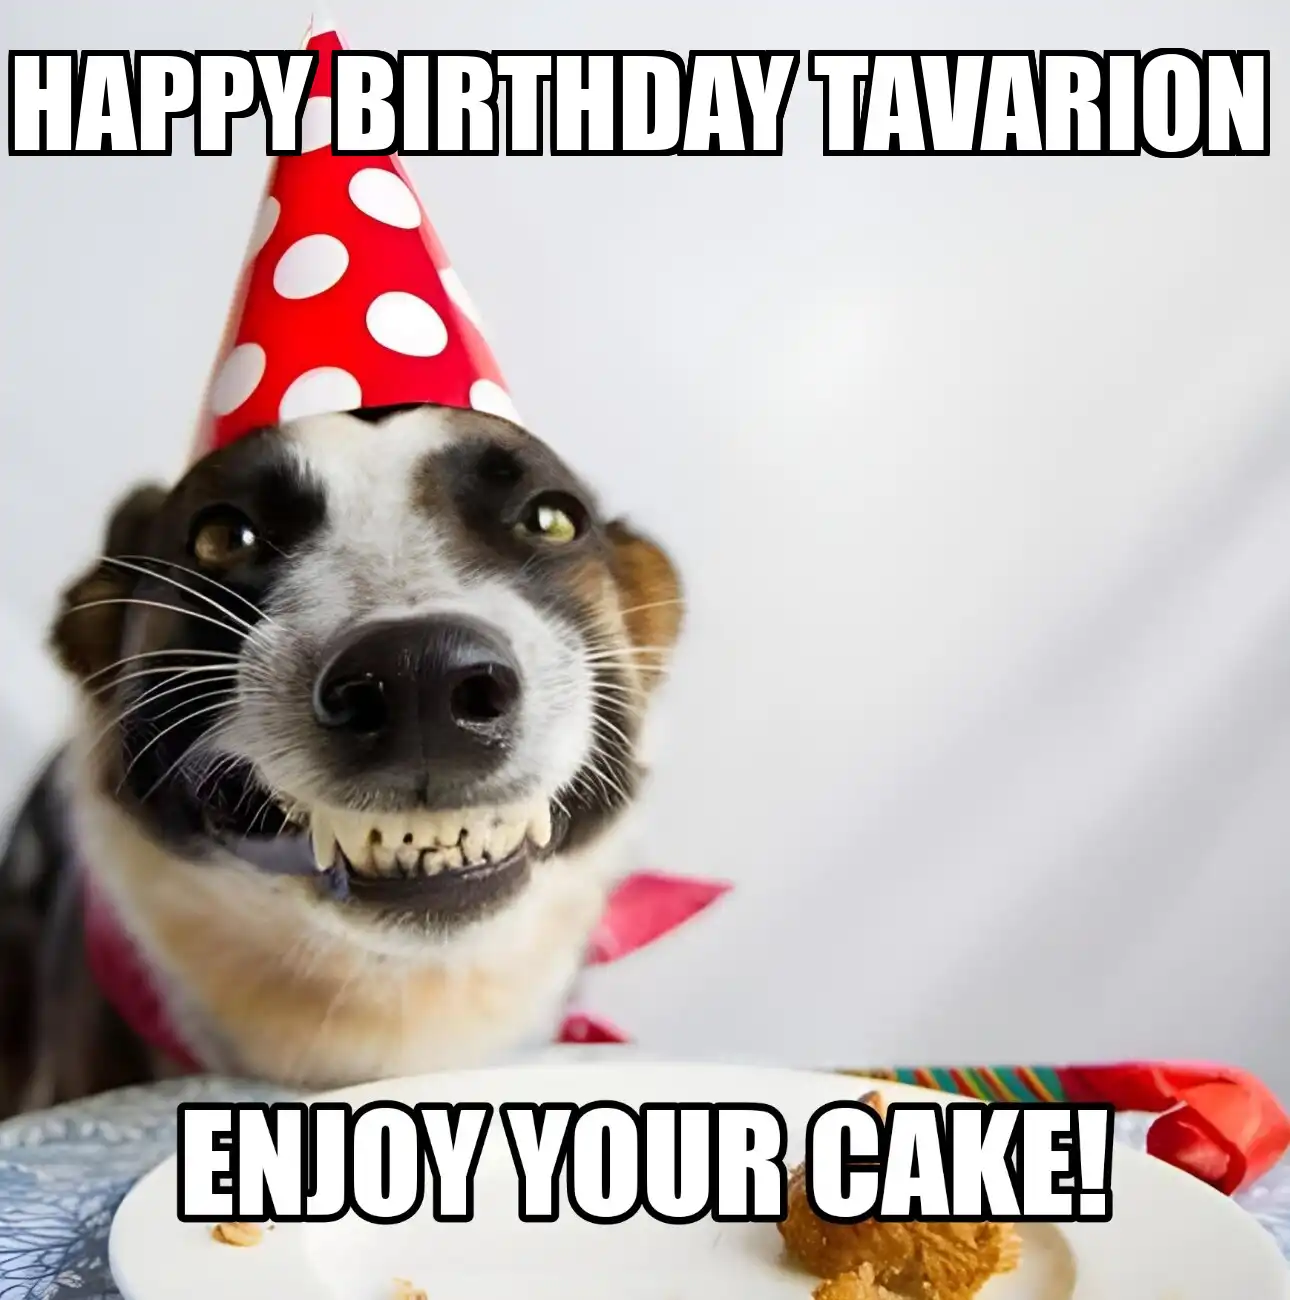 Happy Birthday Tavarion Enjoy Your Cake Dog Meme